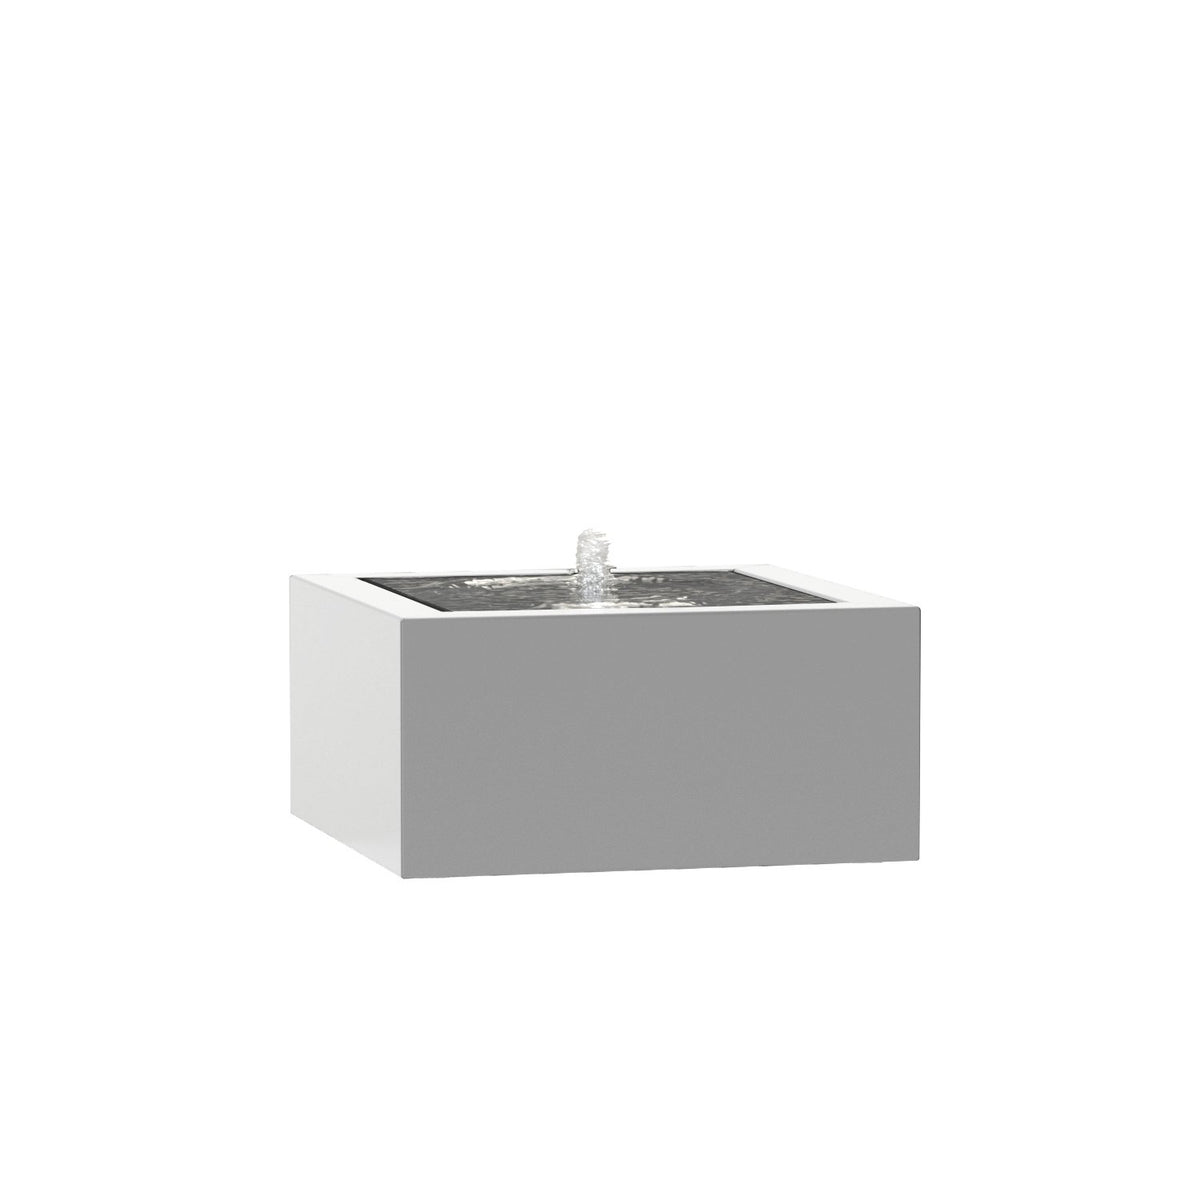 Table à eau rectangulaire en aluminium